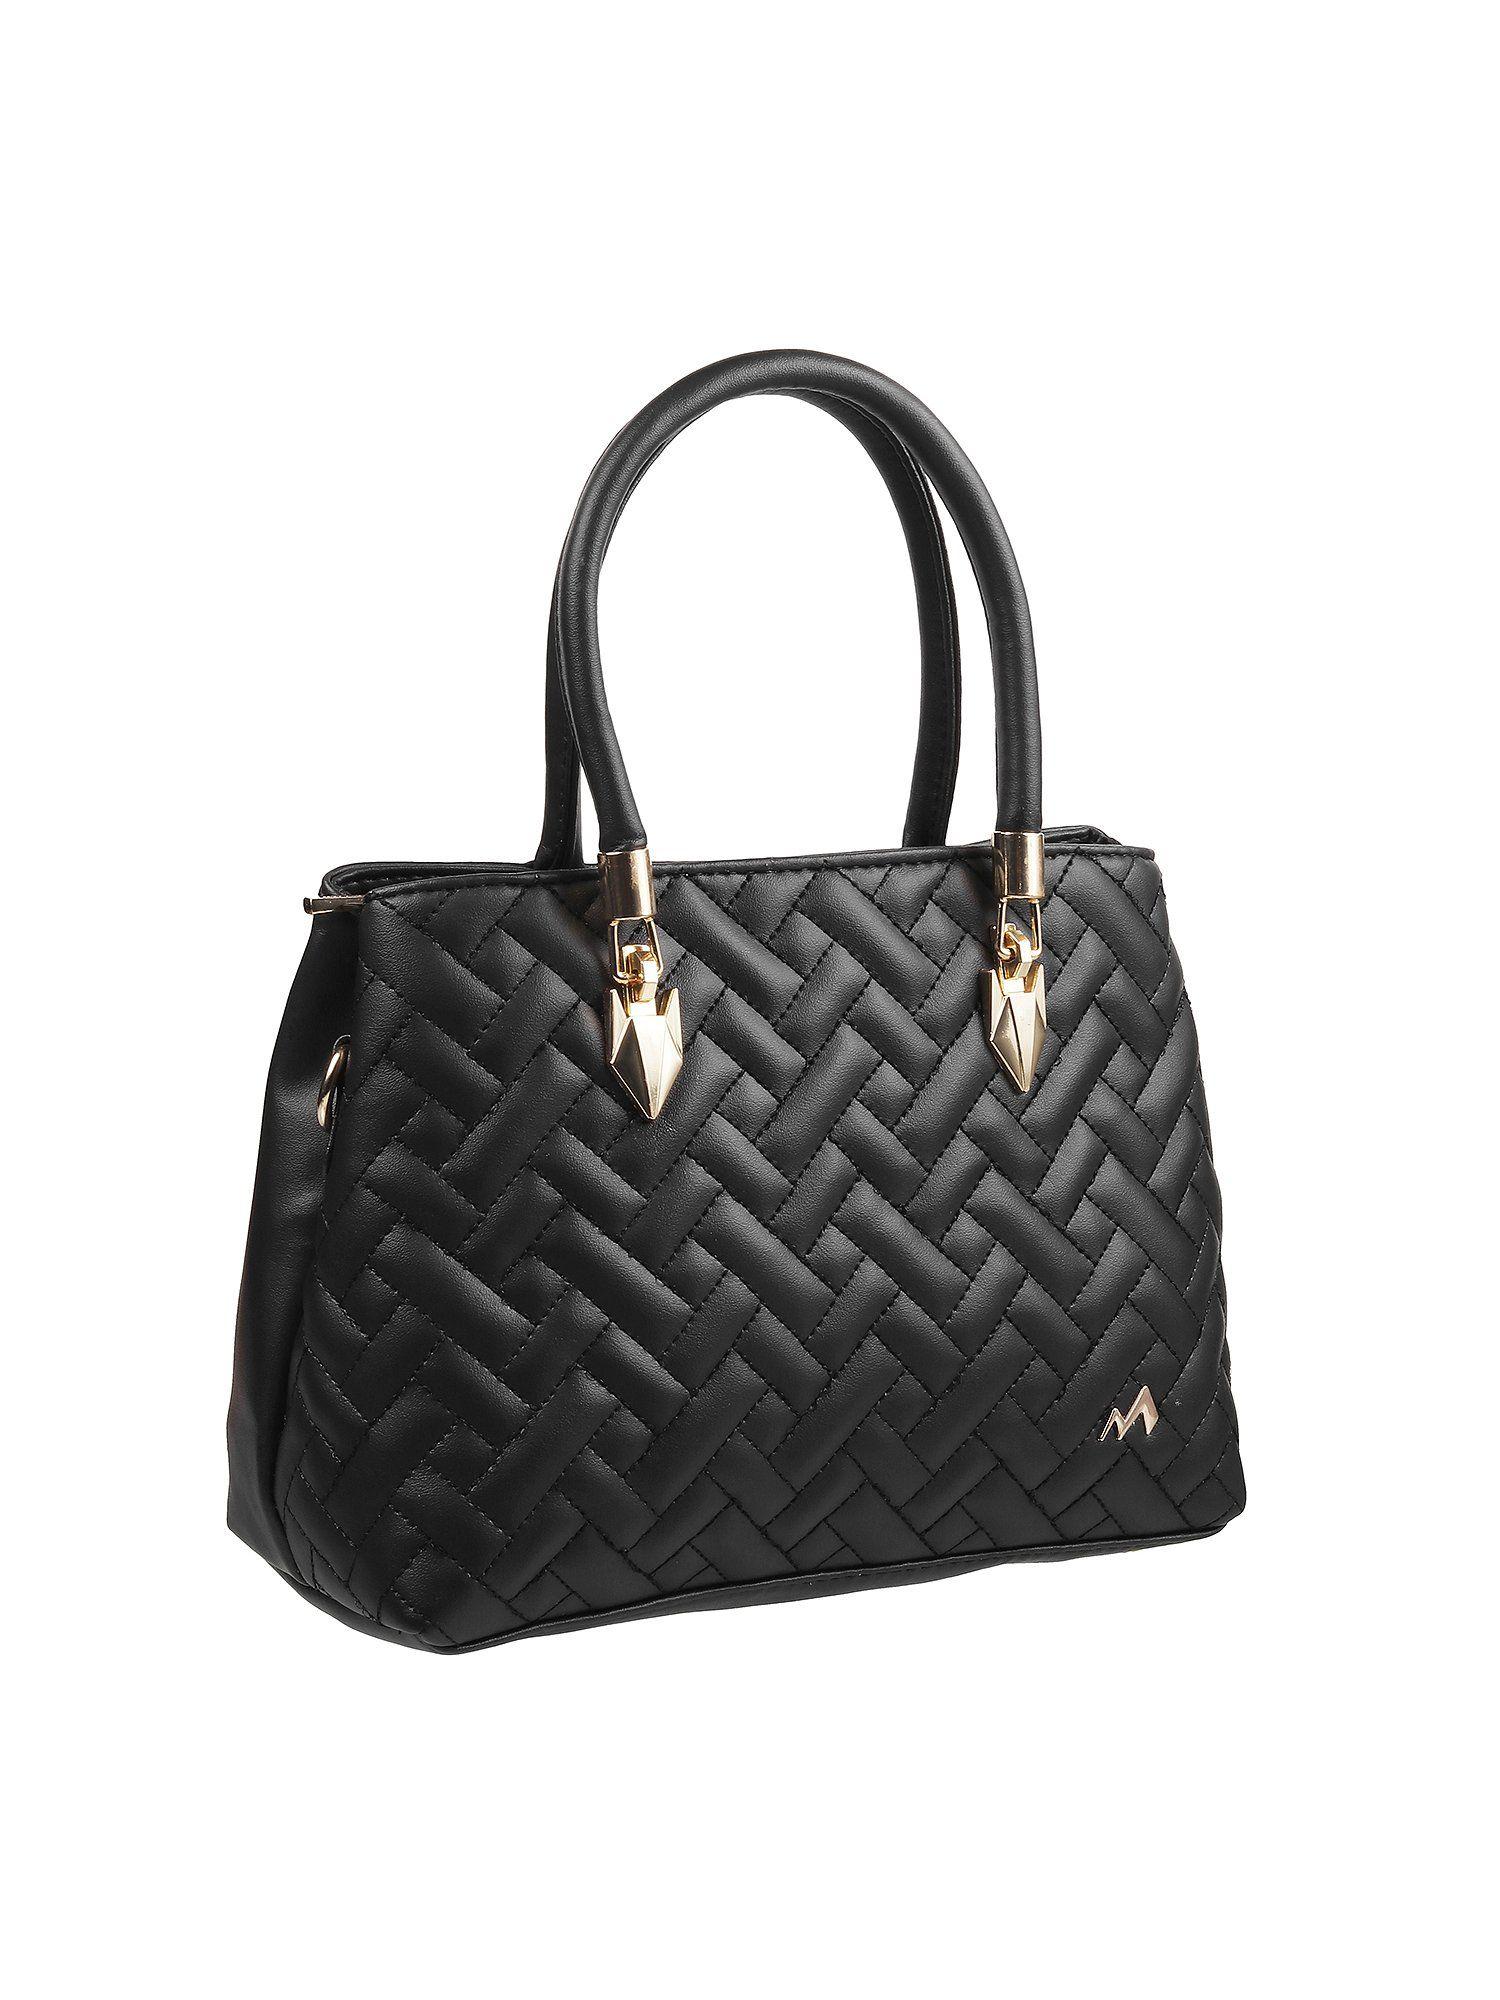 patterned black handbag